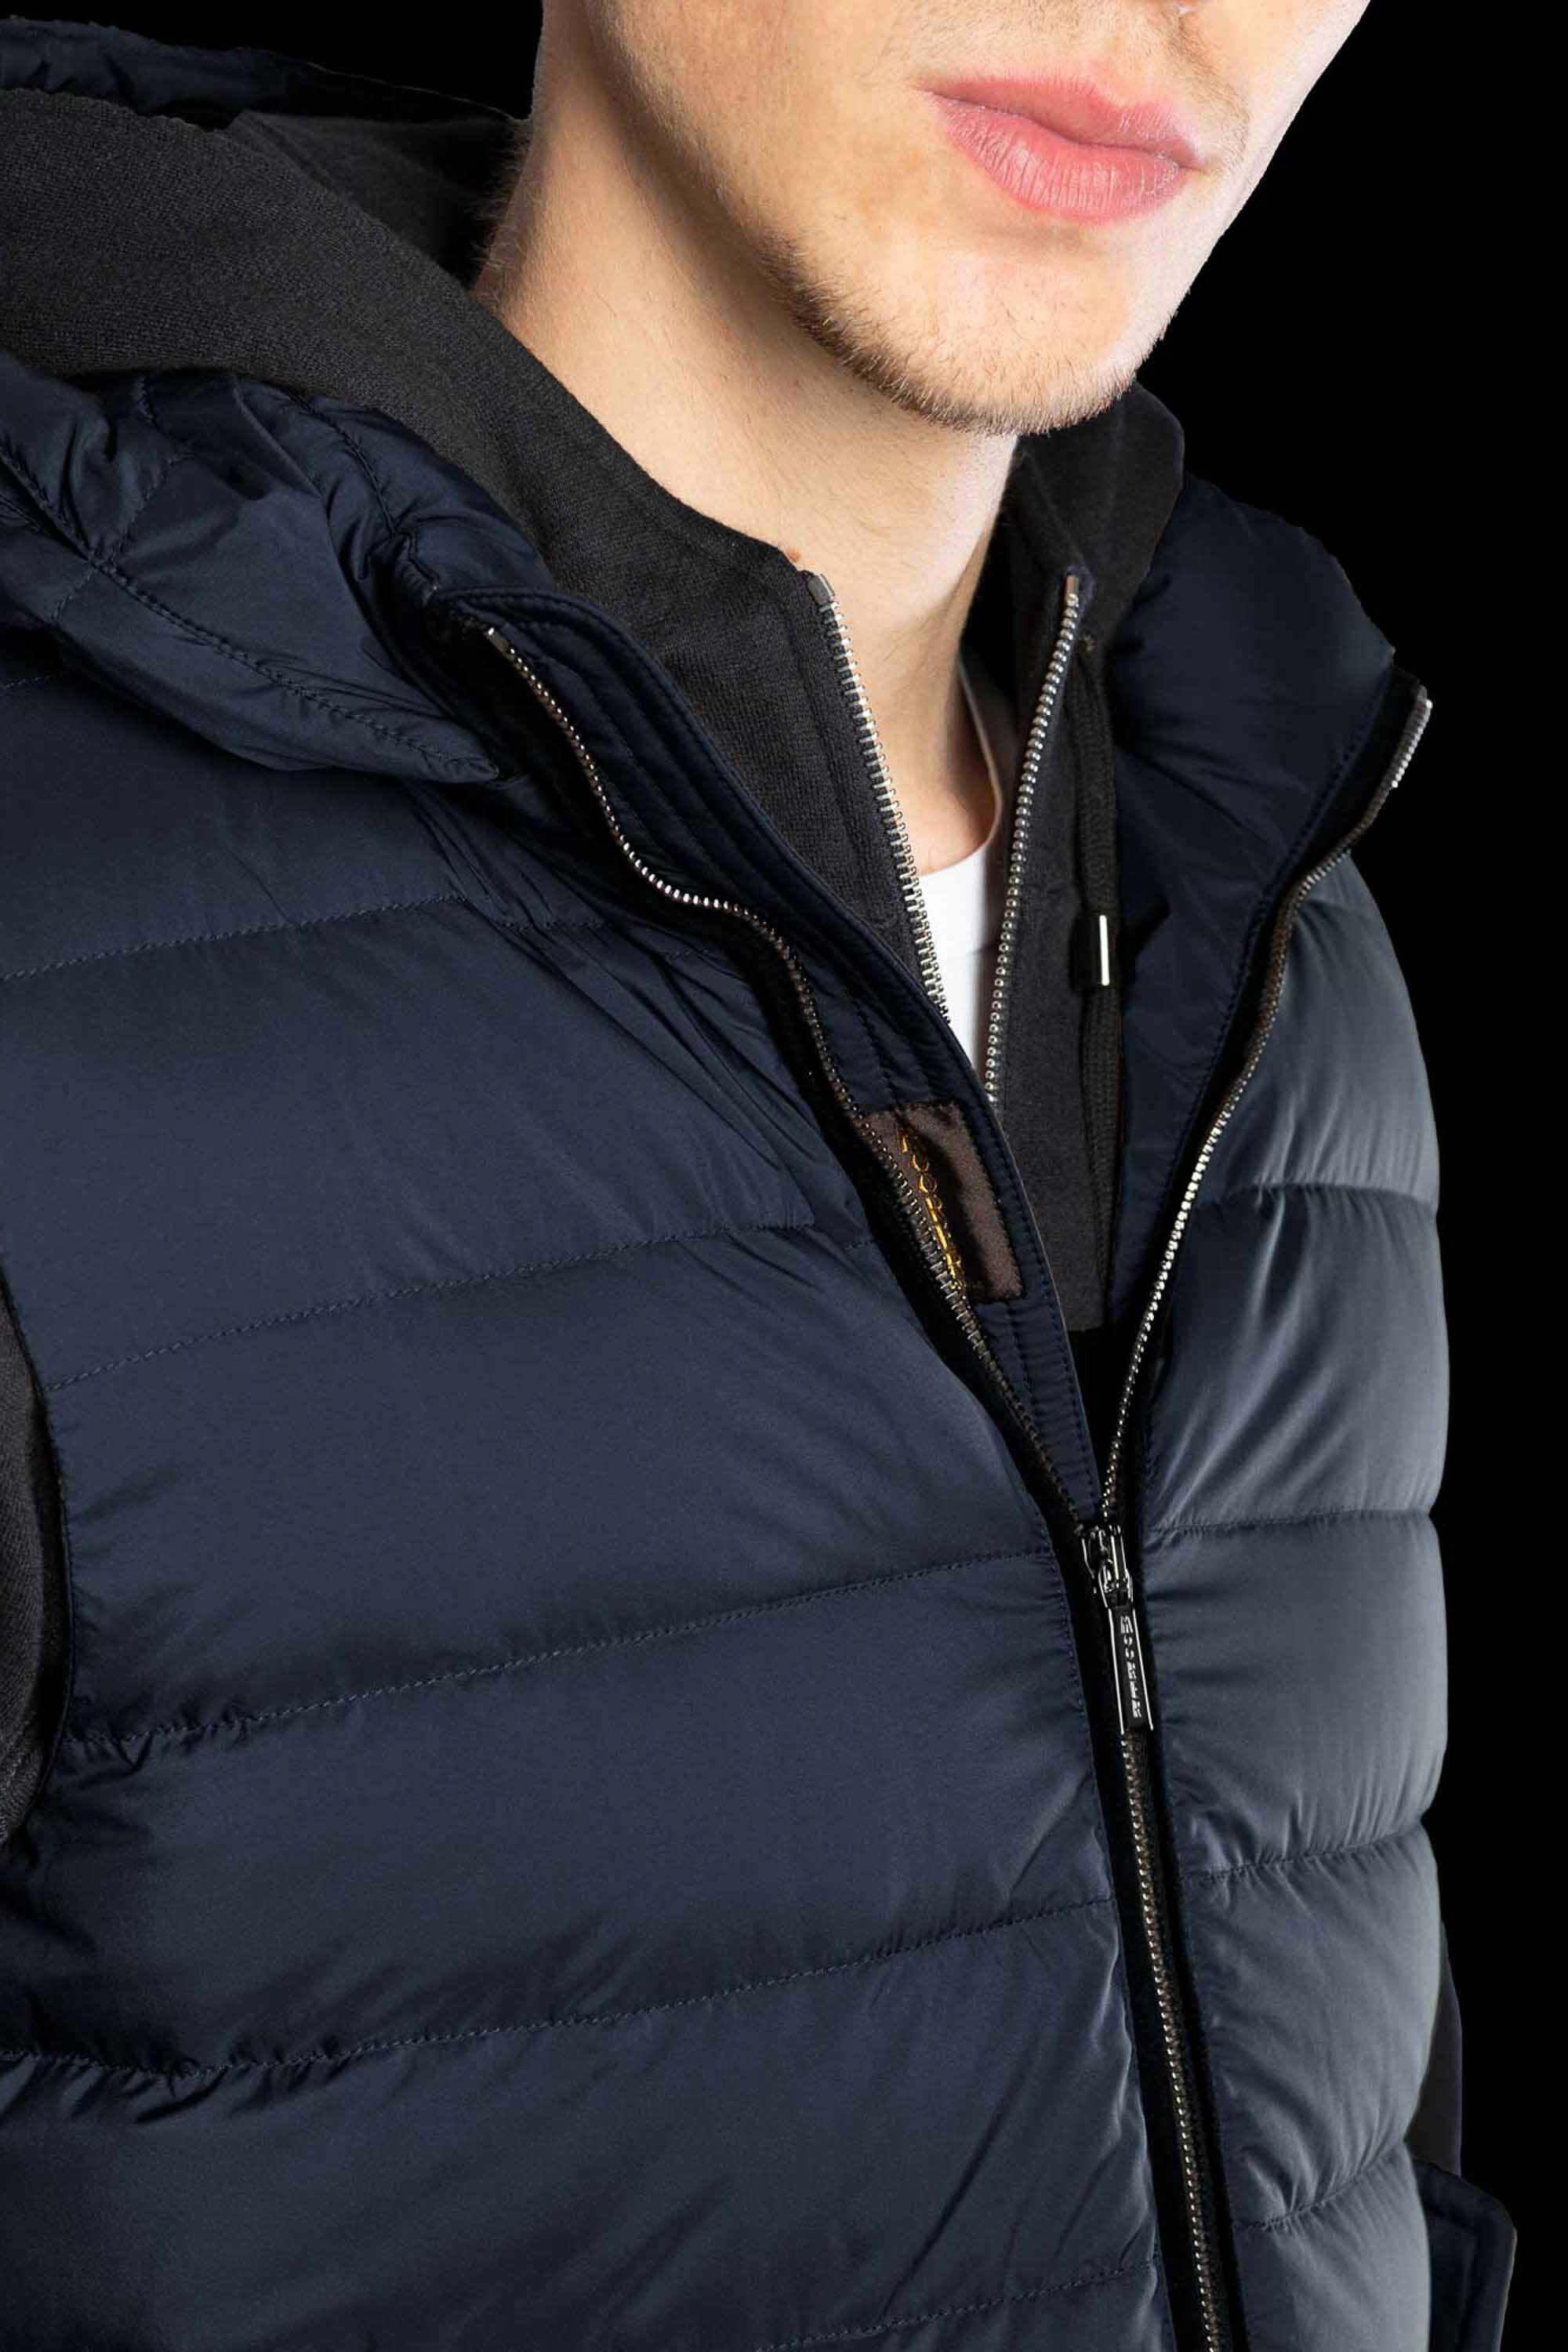 KITAMI-S3 in DARK BLU: Luxury Italian Vests for Men | MooRER®